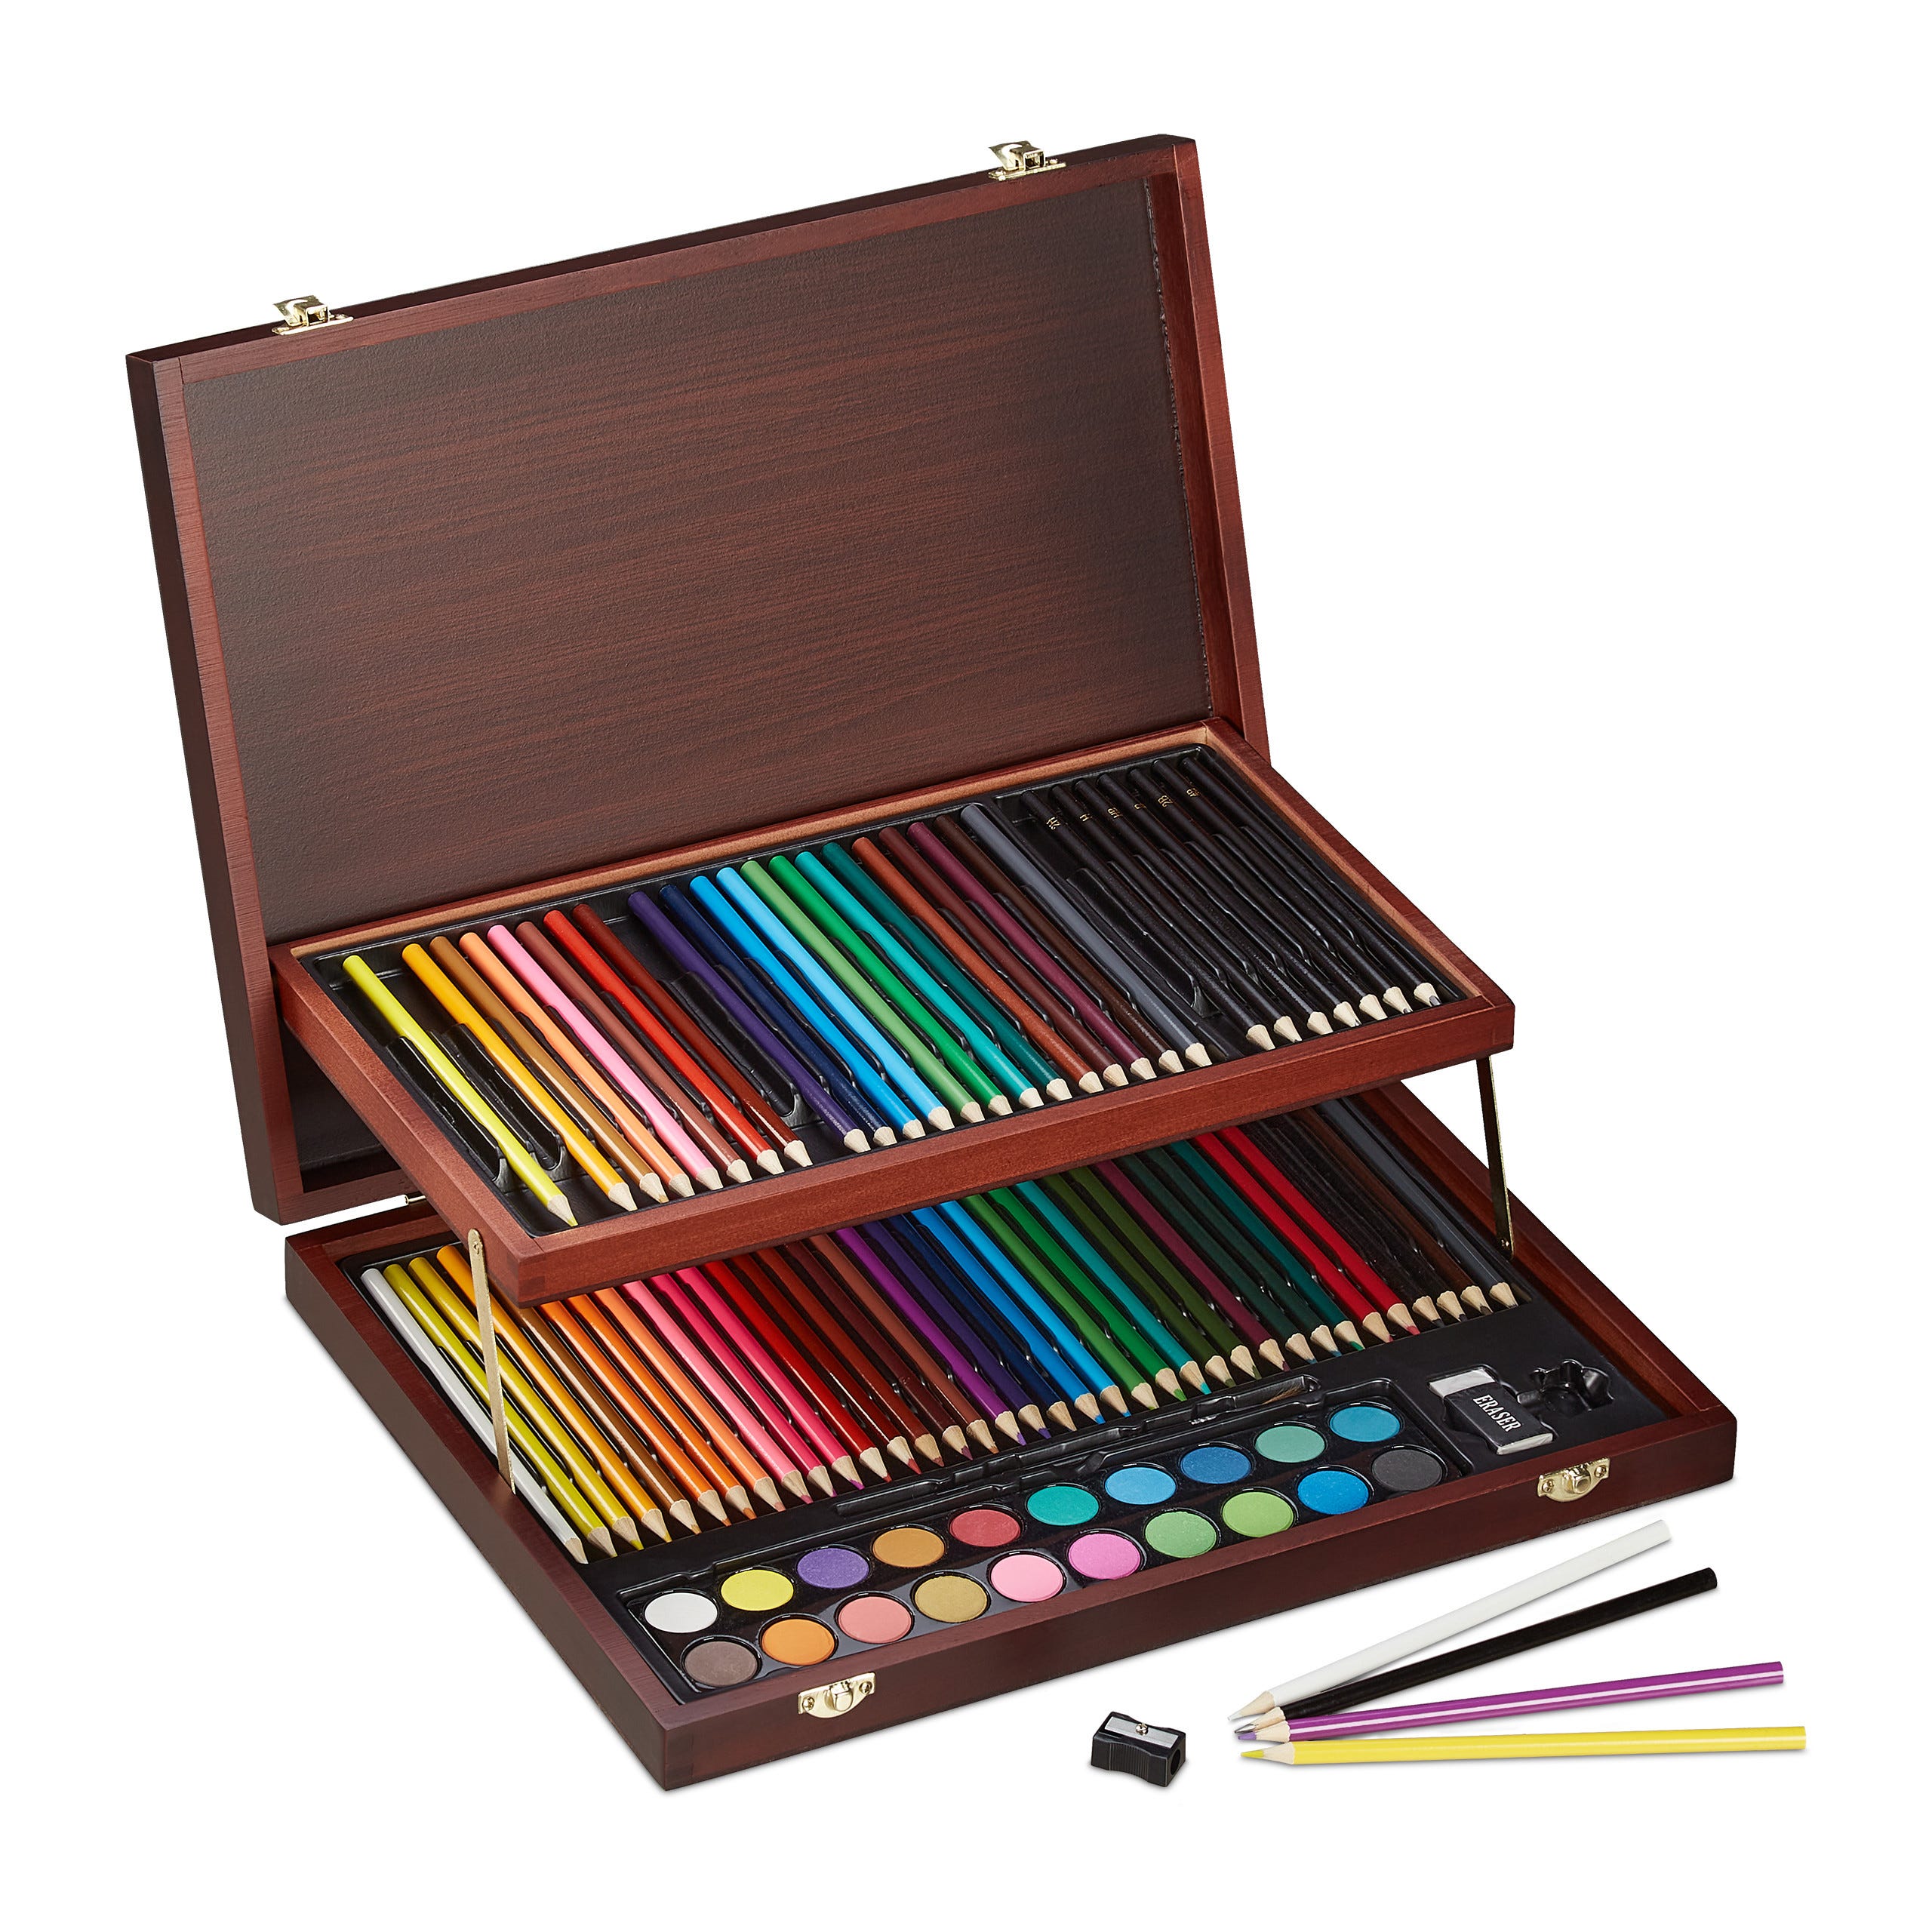 Relaxdays Mallette de coloriage Coffret pour peinture,73 pces dessin;  crayons de couleurs, noir, eau et huile, bordeaux